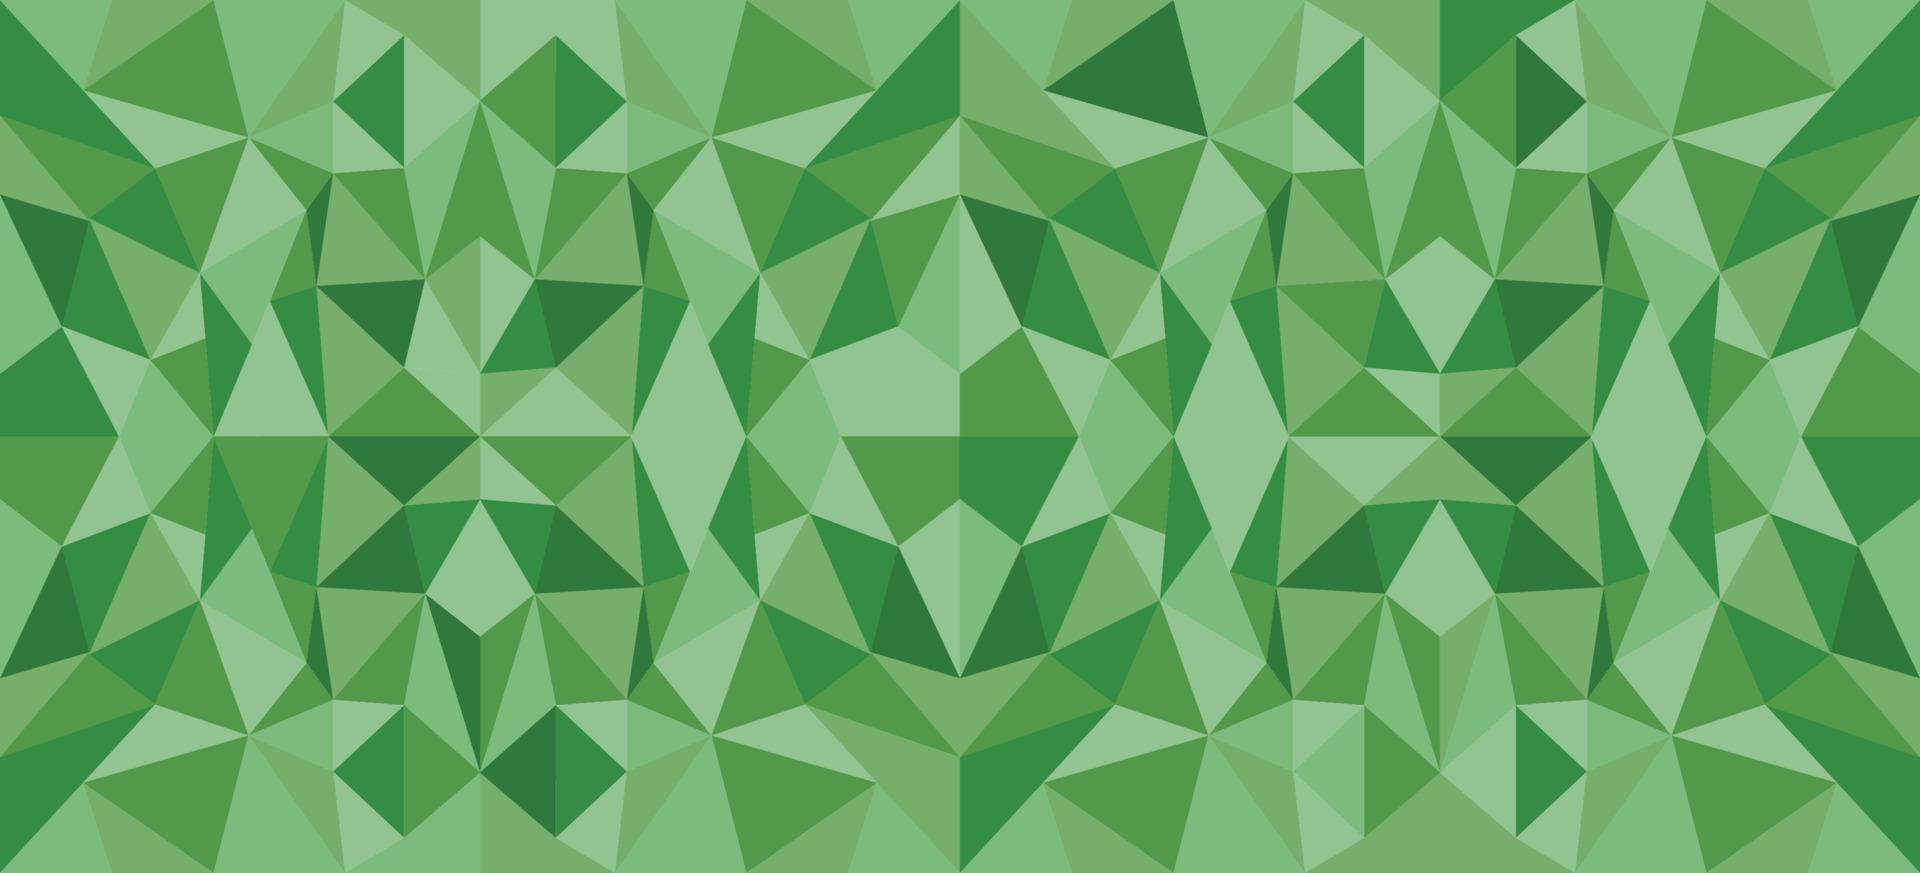 groen driehoek achtergrond vector